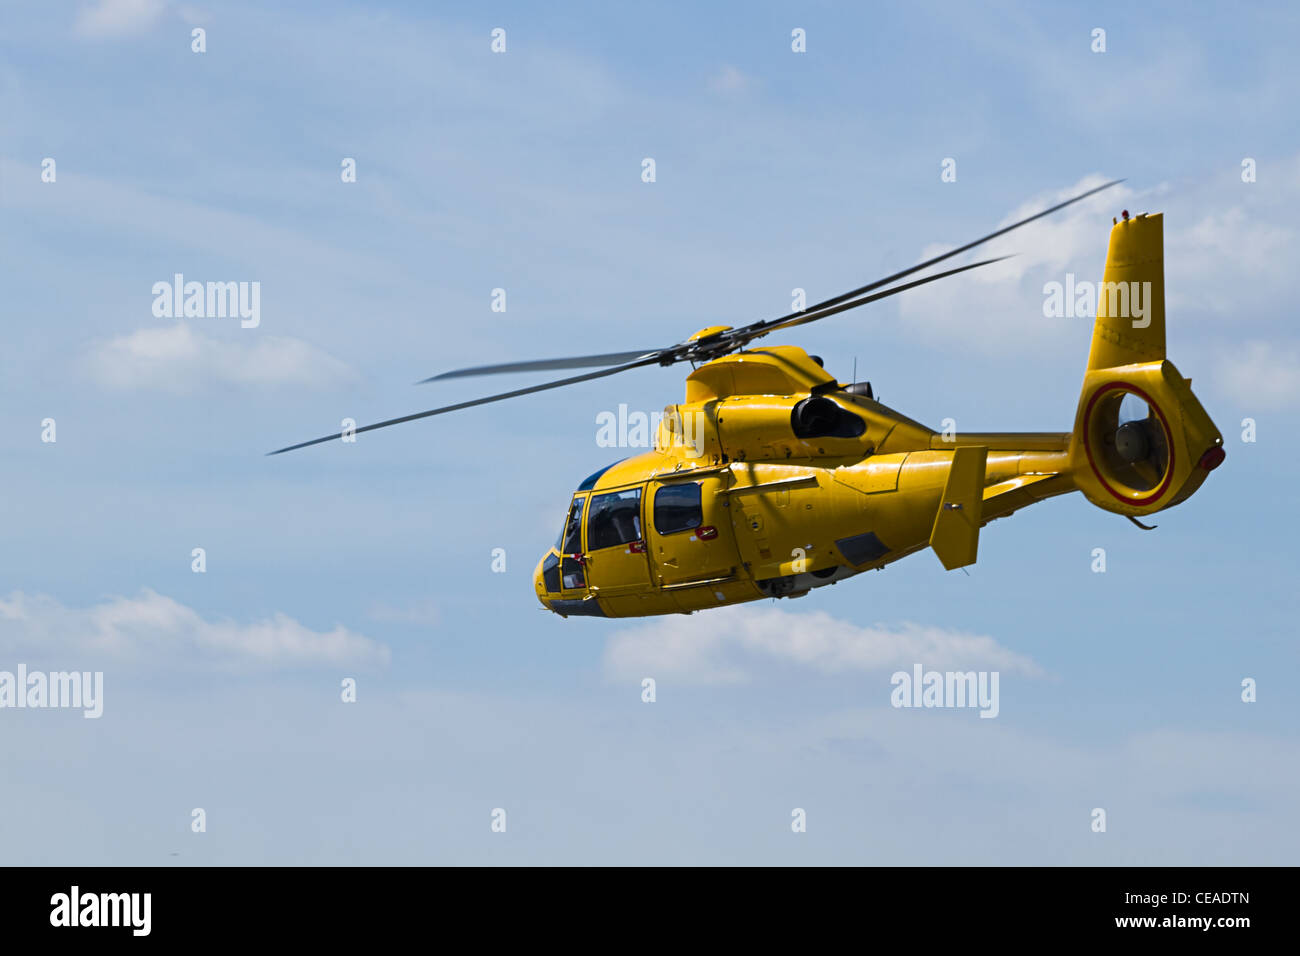 Amarillo helicóptero volando en el cielo nublado Foto de stock